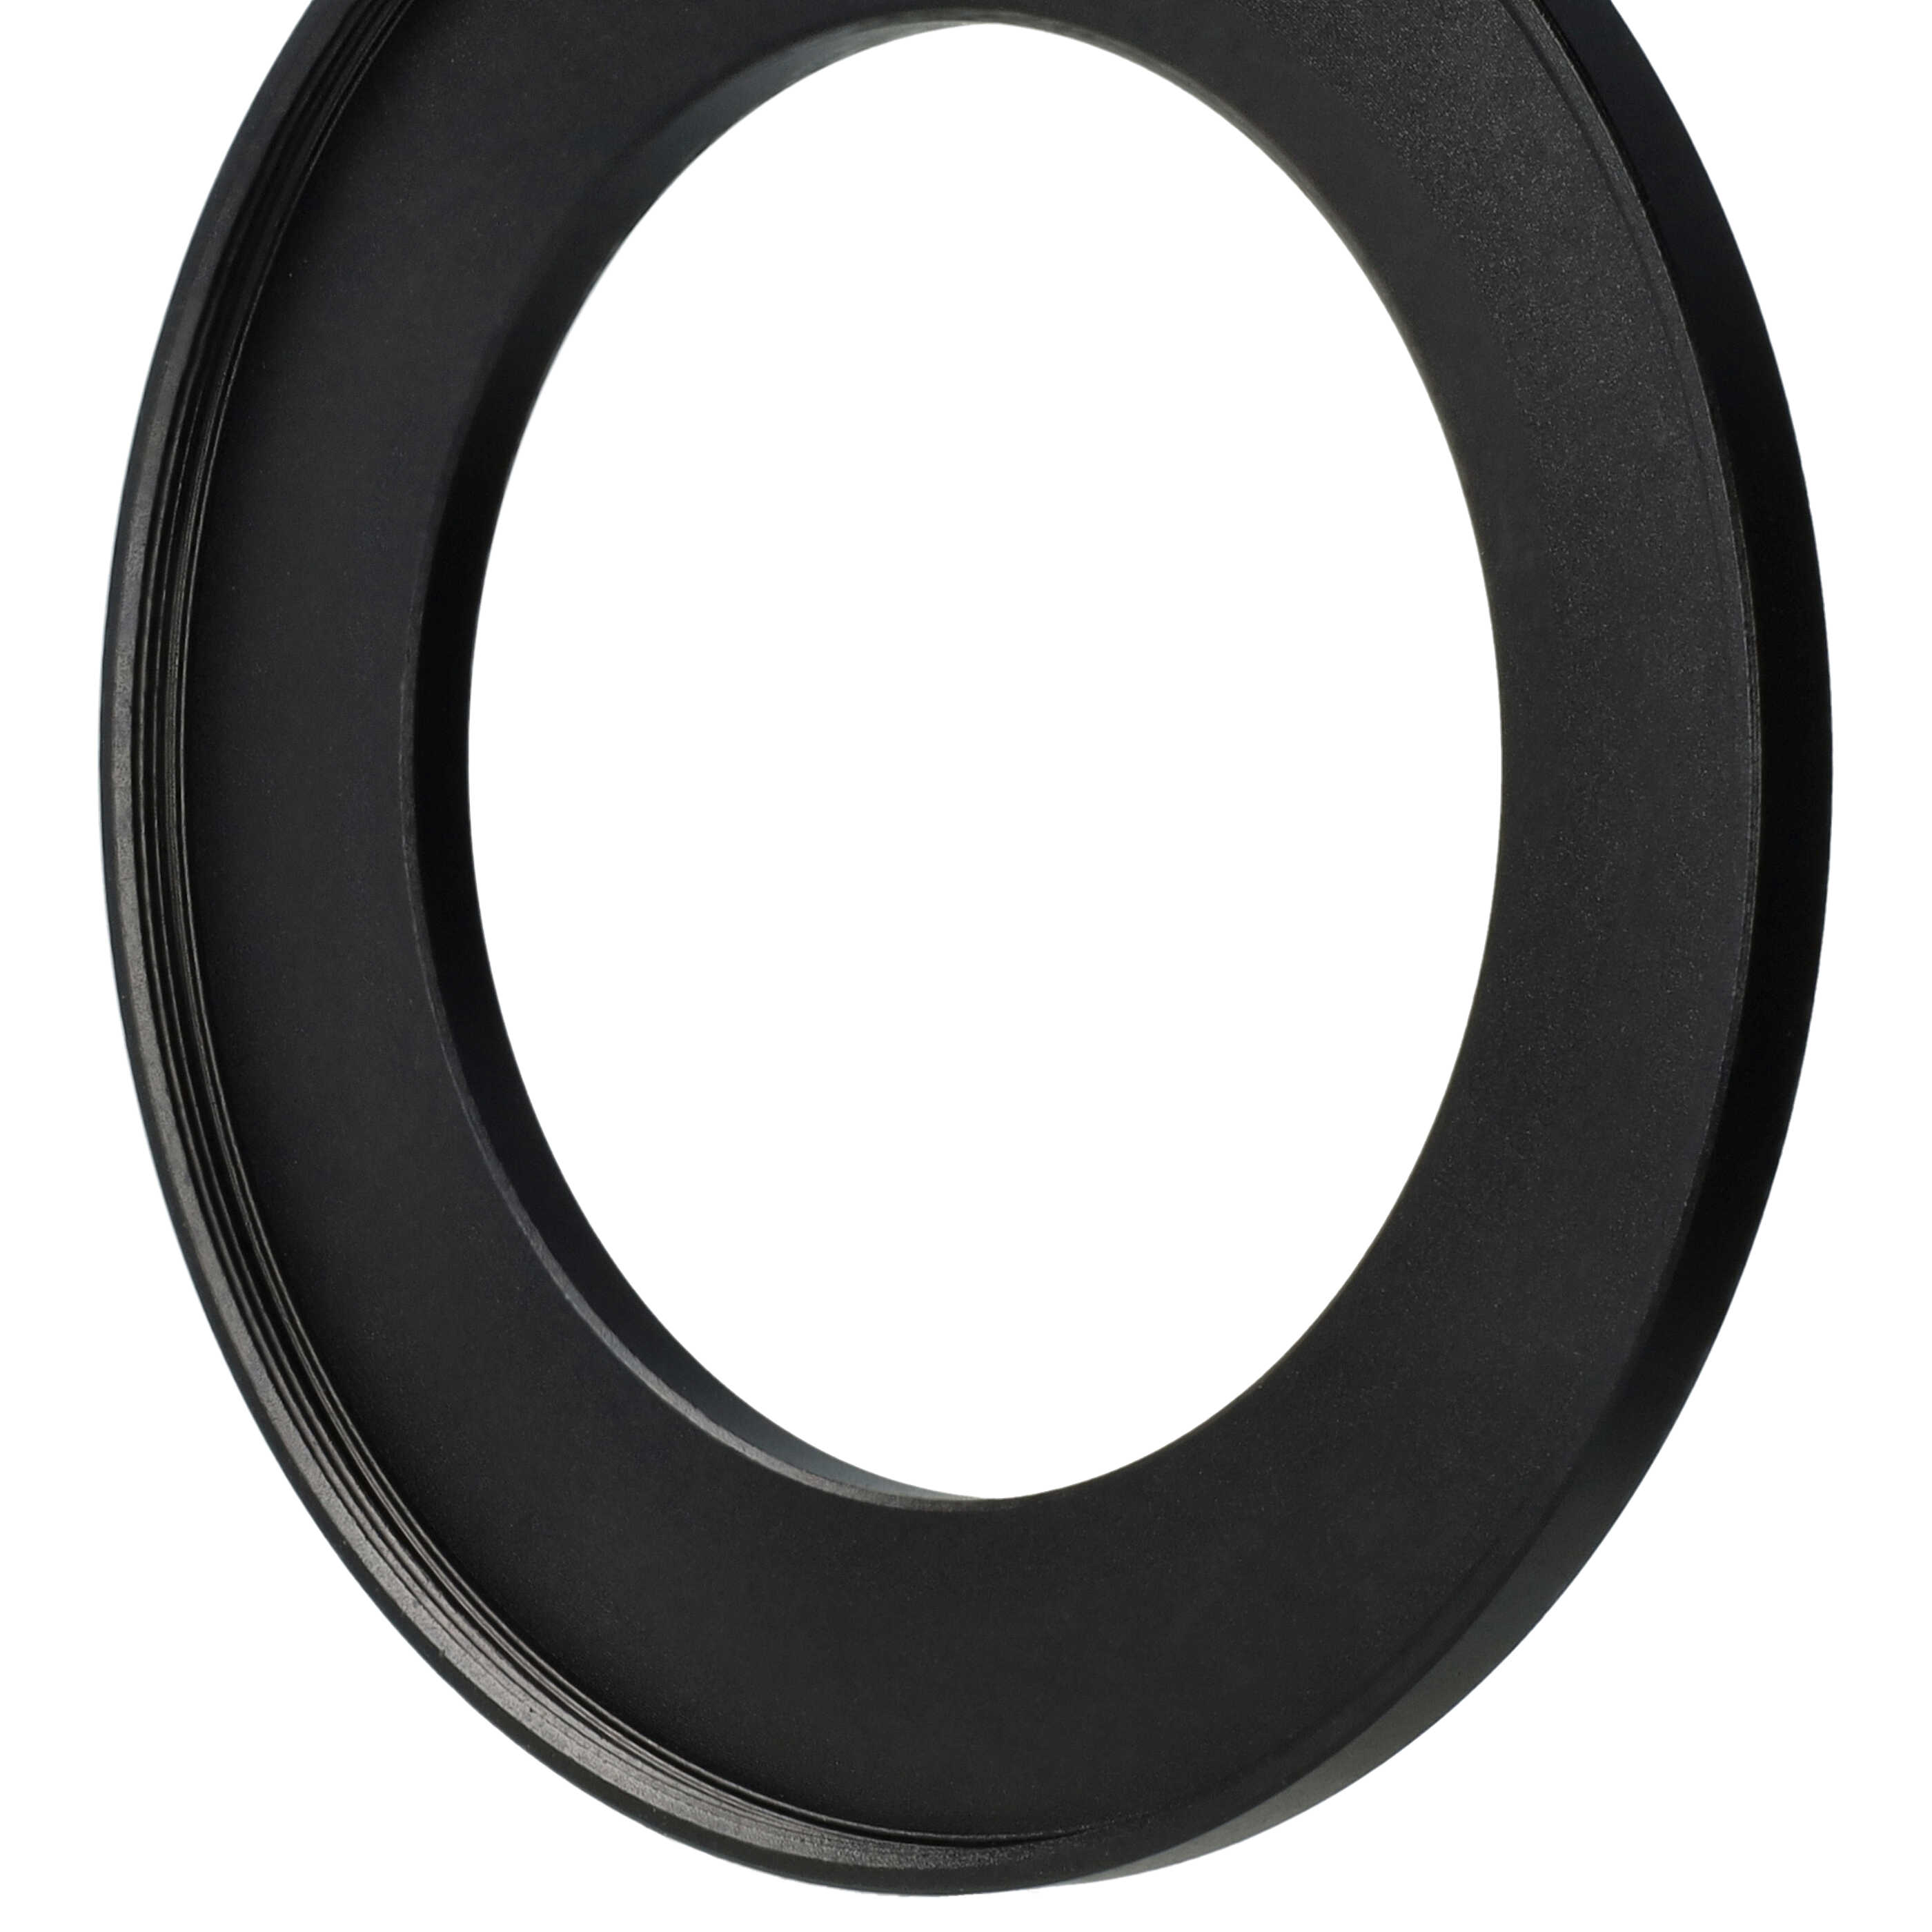 Step-Up-Ring Adapter 55 mm auf 77 mm passend für diverse Kamera-Objektive - Filteradapter